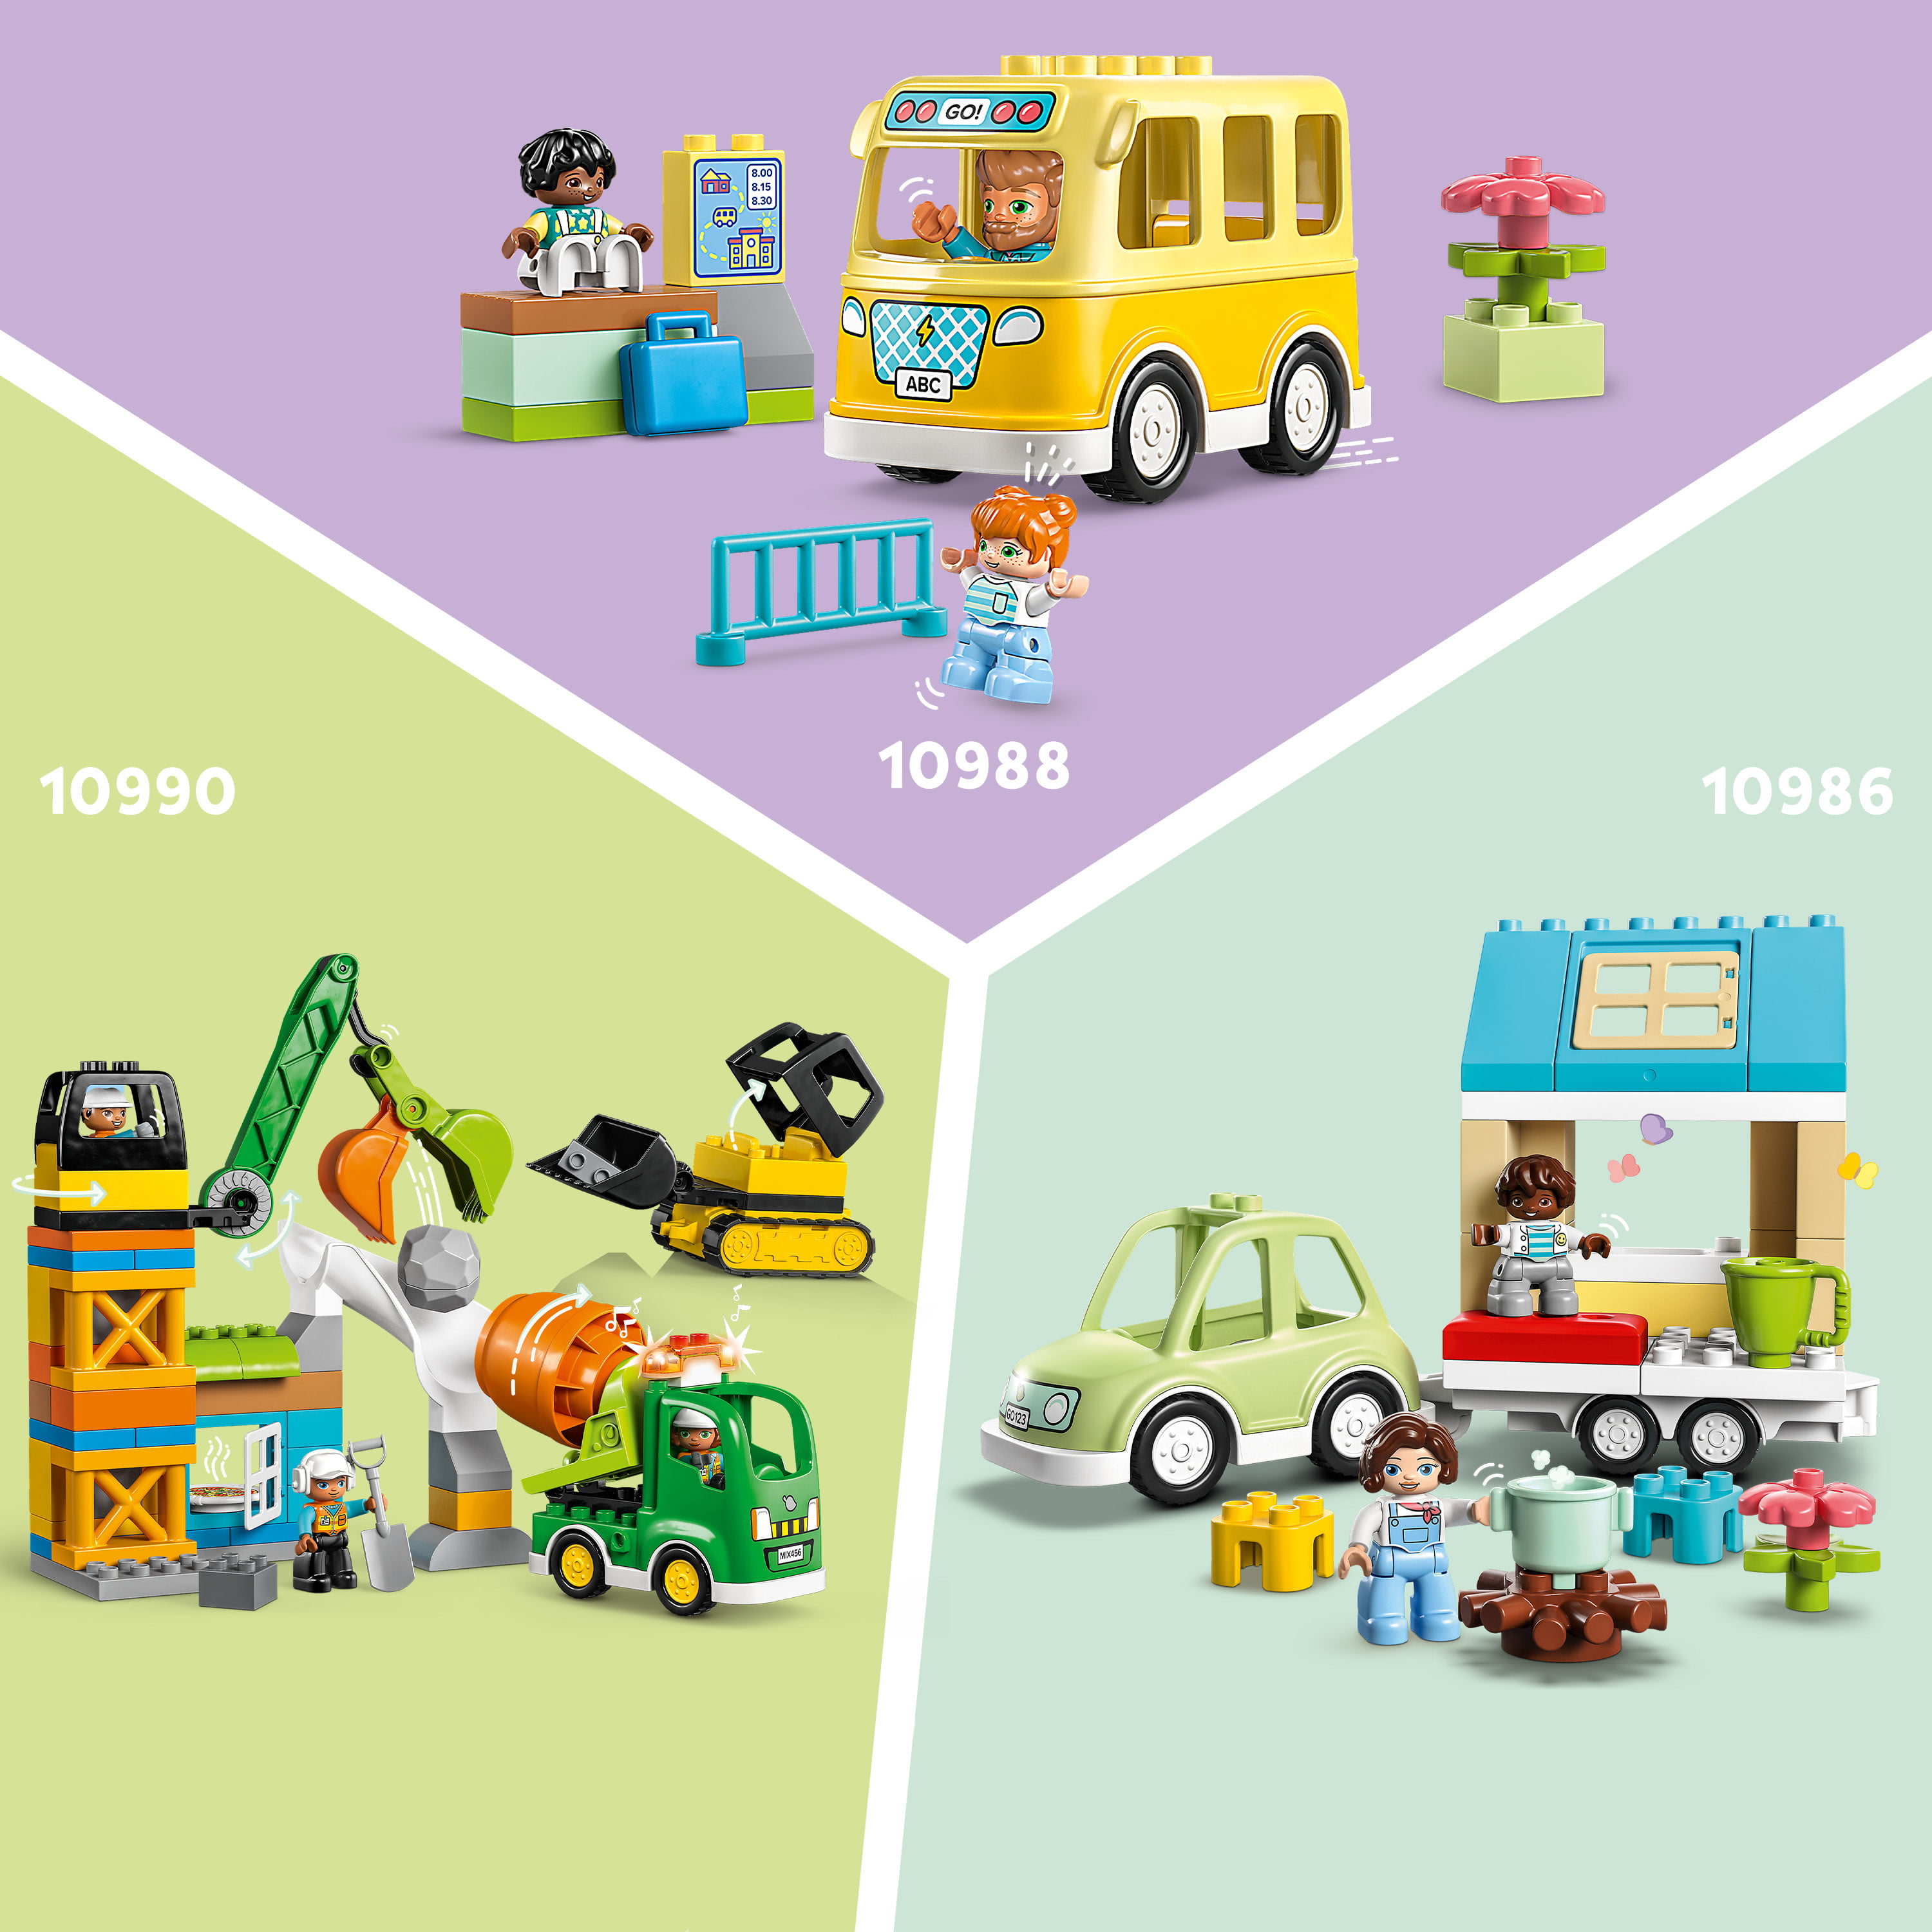 Lego Duplo Le Camion De Poubelle (10987)